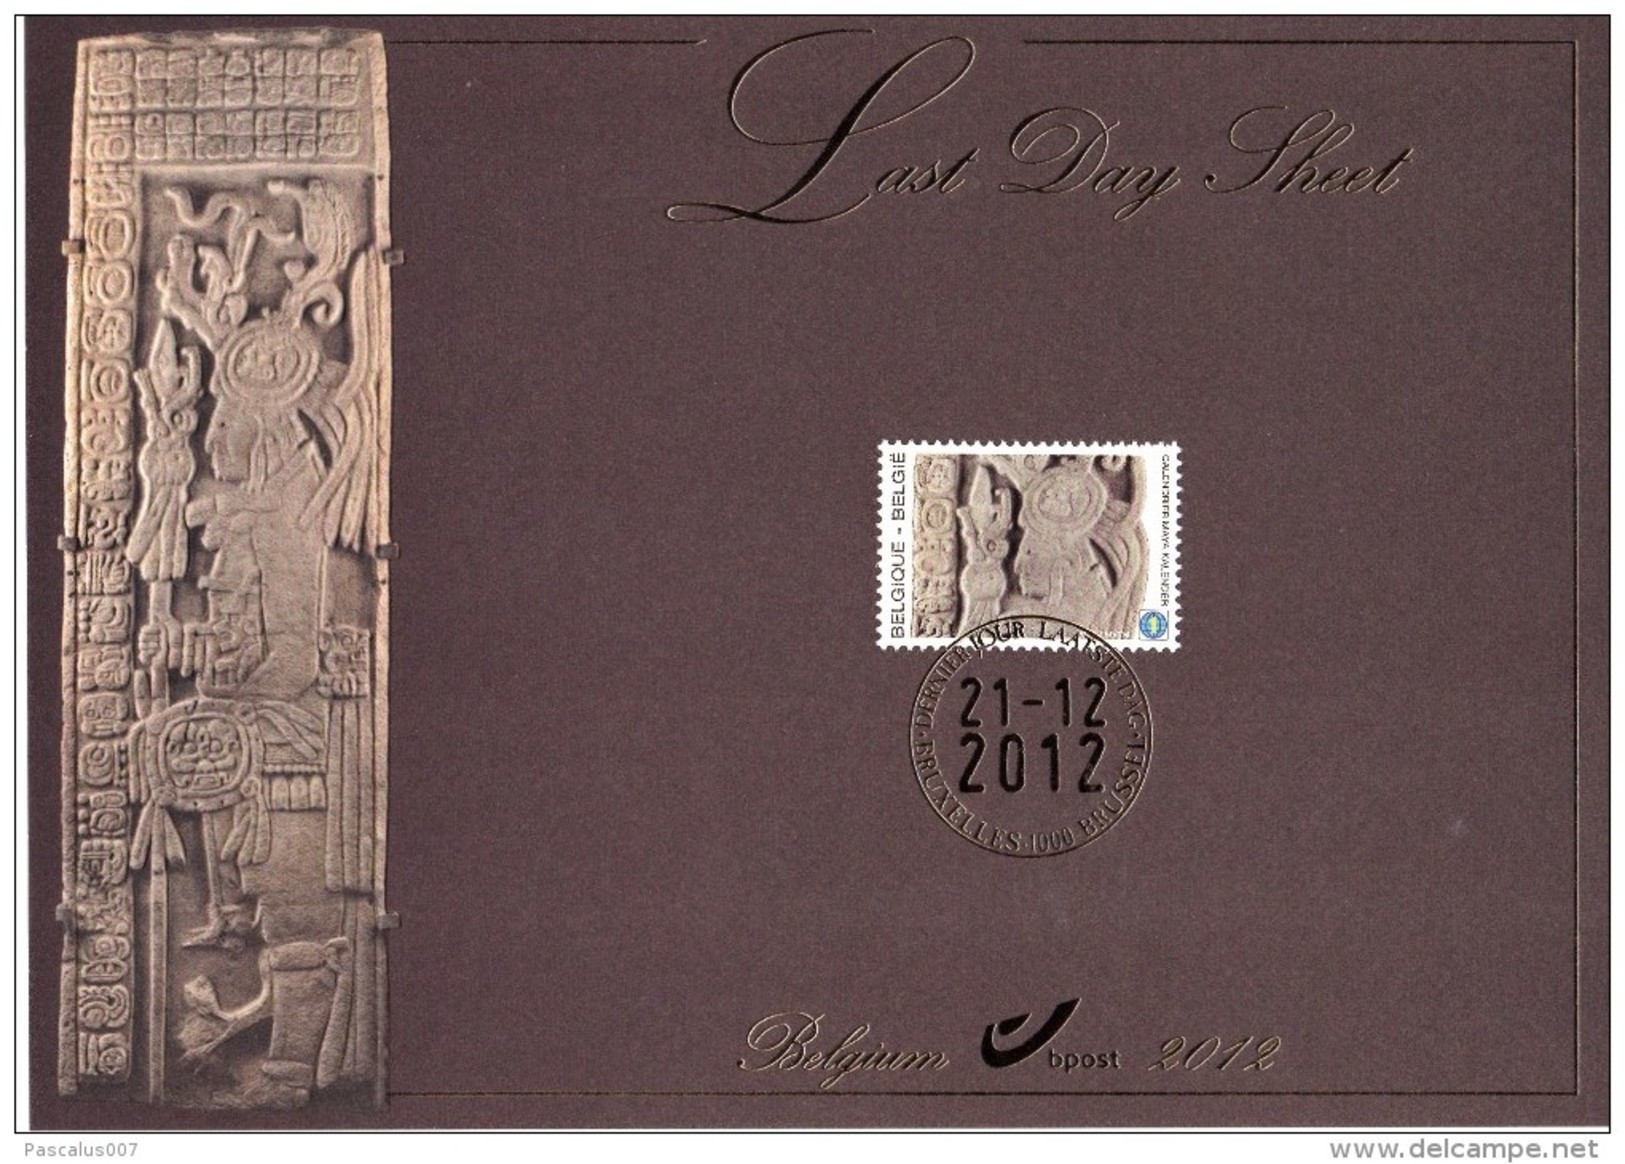 B01-192 Carte Souvenir - Cs - Hk 4194 FDS LDS Belgique Le Calendrier Maya Last Day Sheet 21-12-2012 Bruxelles 1000 Bruss - Cartas Commemorativas - Emisiones Comunes [HK]